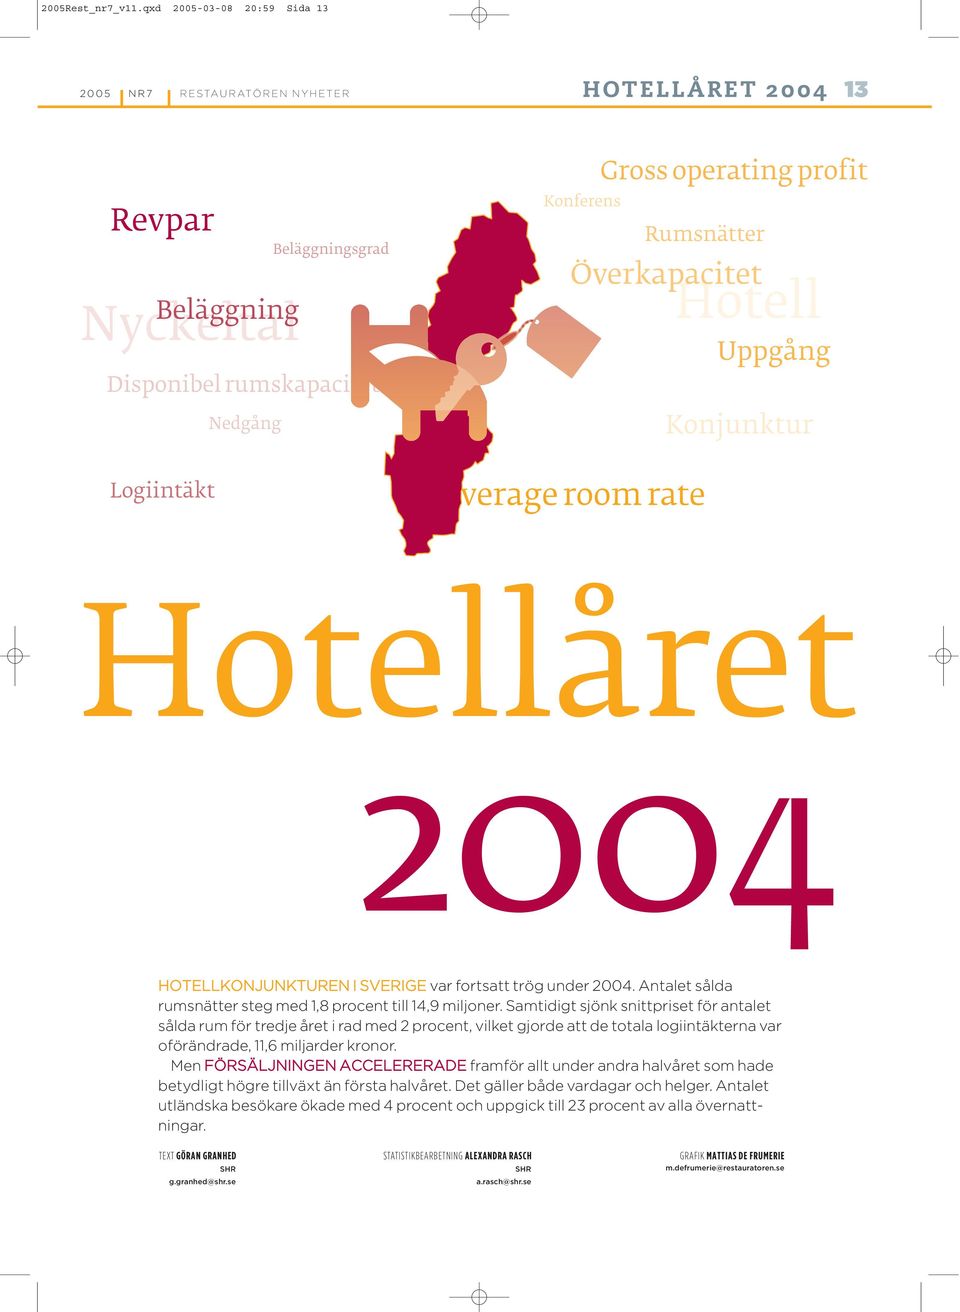 Överkapacitet Hotell Uppgång Konjunktur Hotellåret HOTELLKONJUNKTUREN I SVERIGE var fortsatt trög under. et sålda rumsnätter steg med, procent till, miljoner.